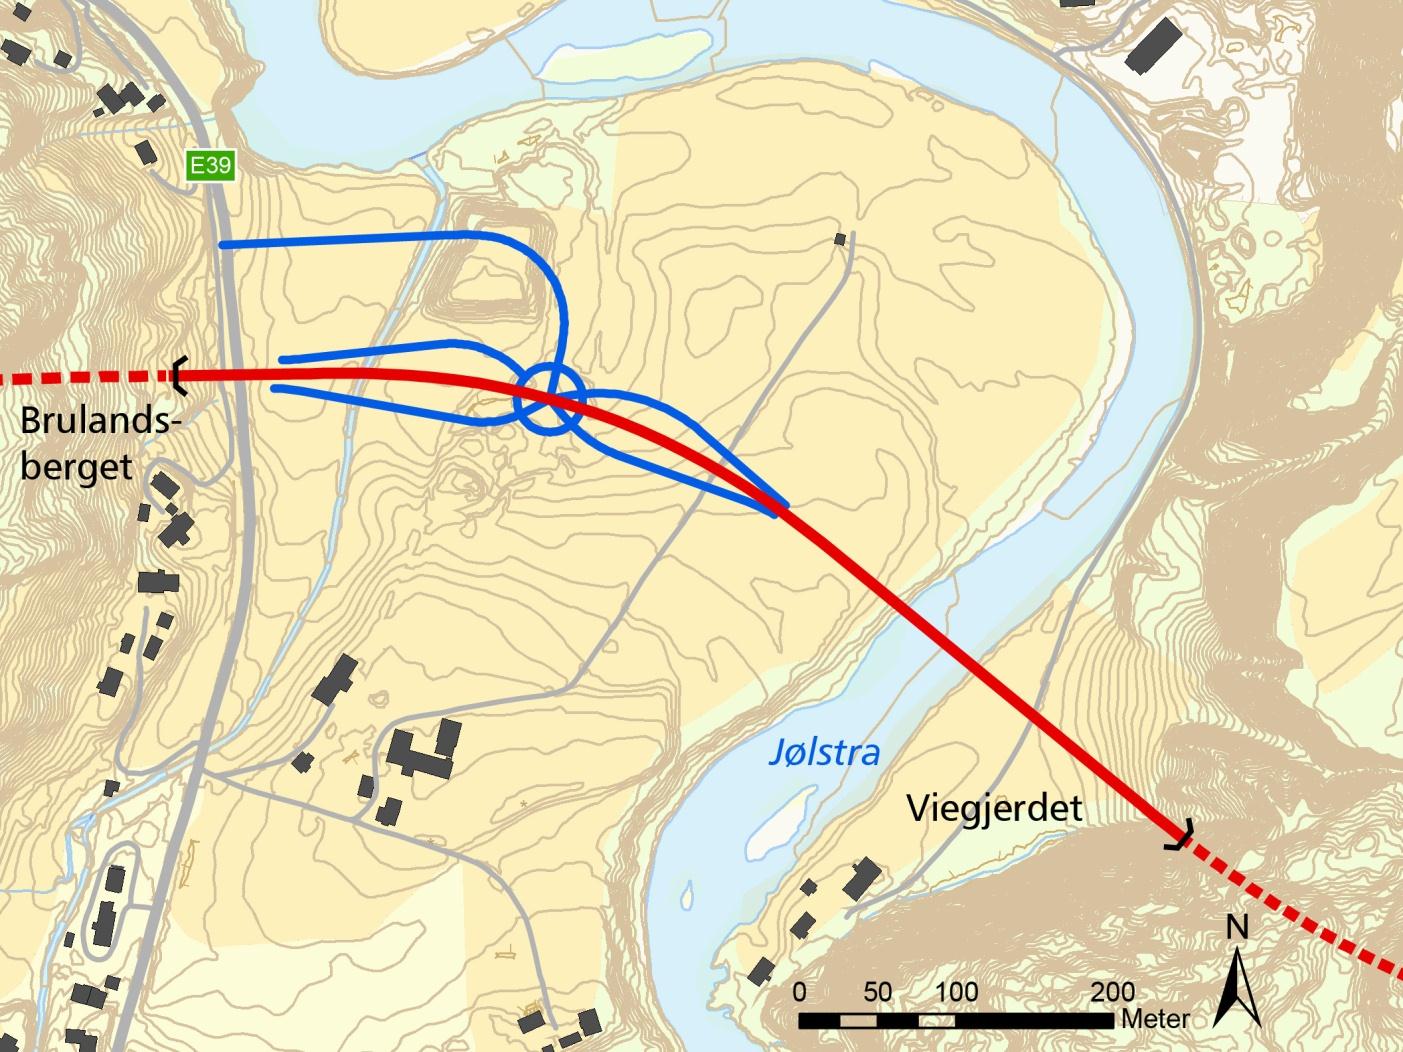 4.6.7 Brulandsberget Viegjerdet (700 m) Strekninga mellom tunnelane på Brulandsberget og Viegjerdet går over jordbruksareal og våtmark, før den kryssar Jølstra mot Viegjerdet.